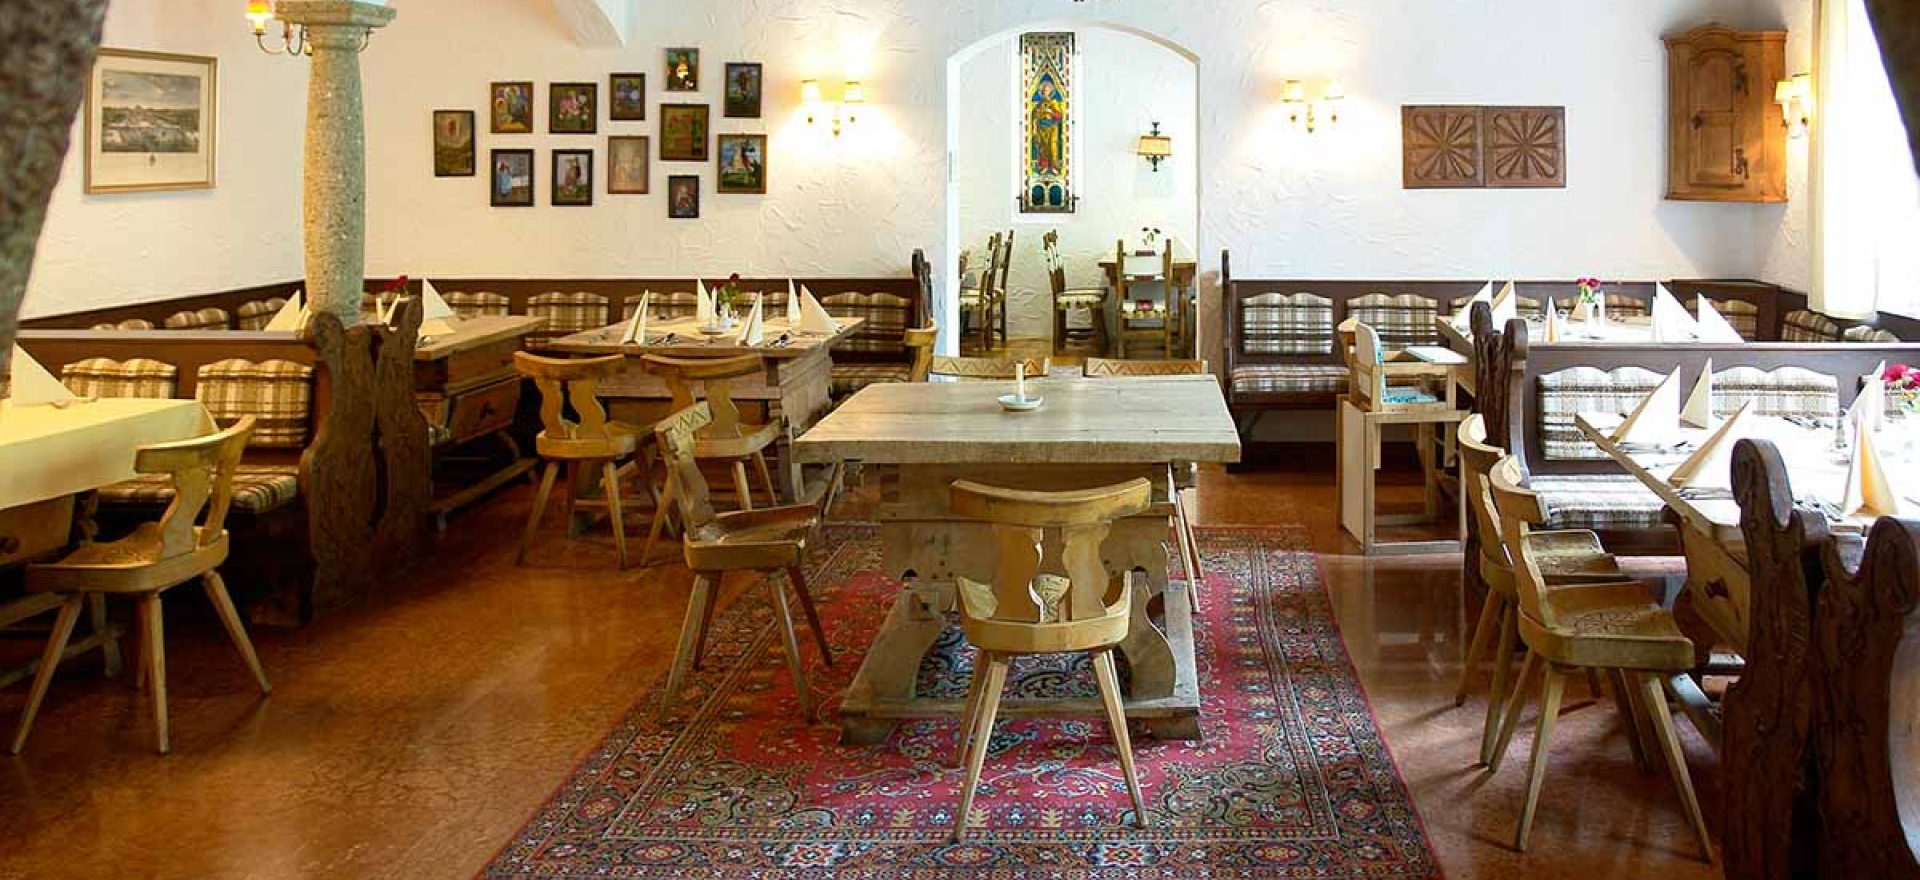 The Bavarian room in the restaurant of Stol's Hotel Alpina in Berchtesgaden / Schönau am Königssee